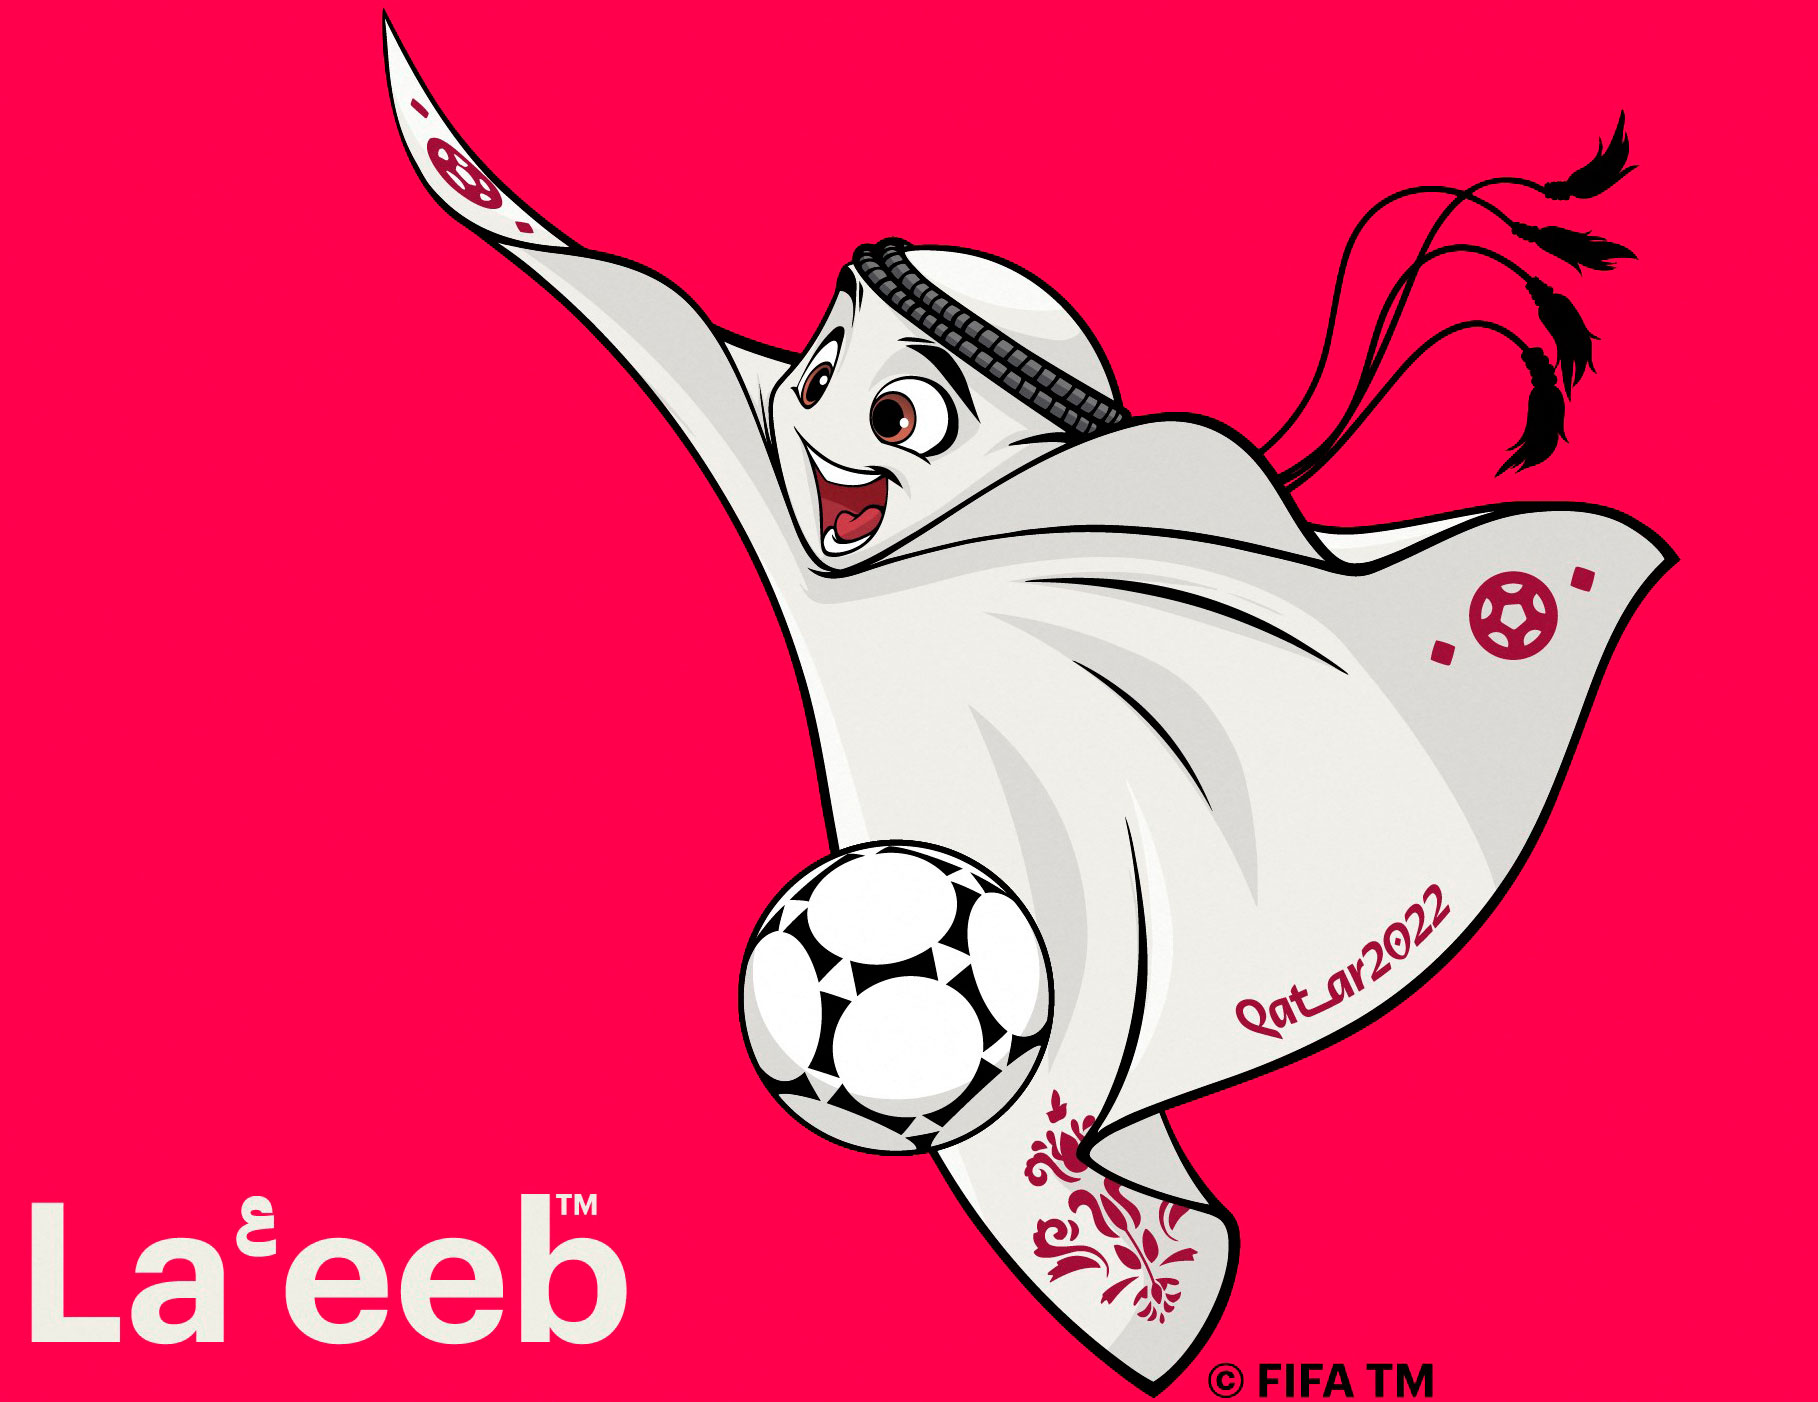  ‘La'eeb’, la mascota del Mundial